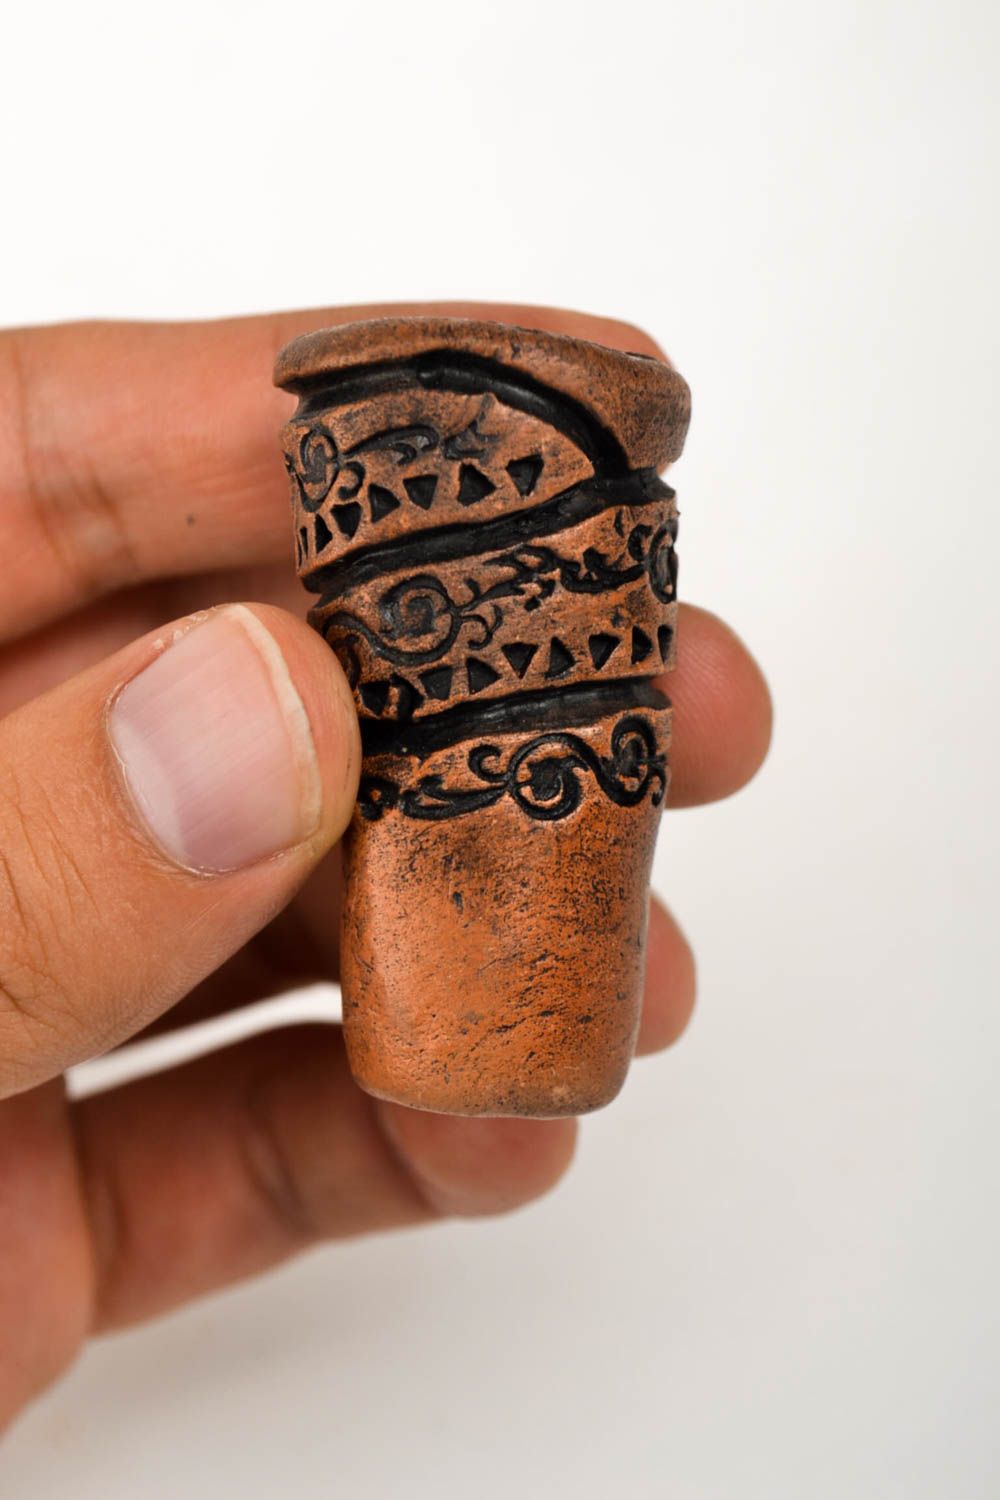 Beste Shisha Keramik handmade Shisha Tonkopf Geschenk Ideen Souvenir aus Keramik foto 2